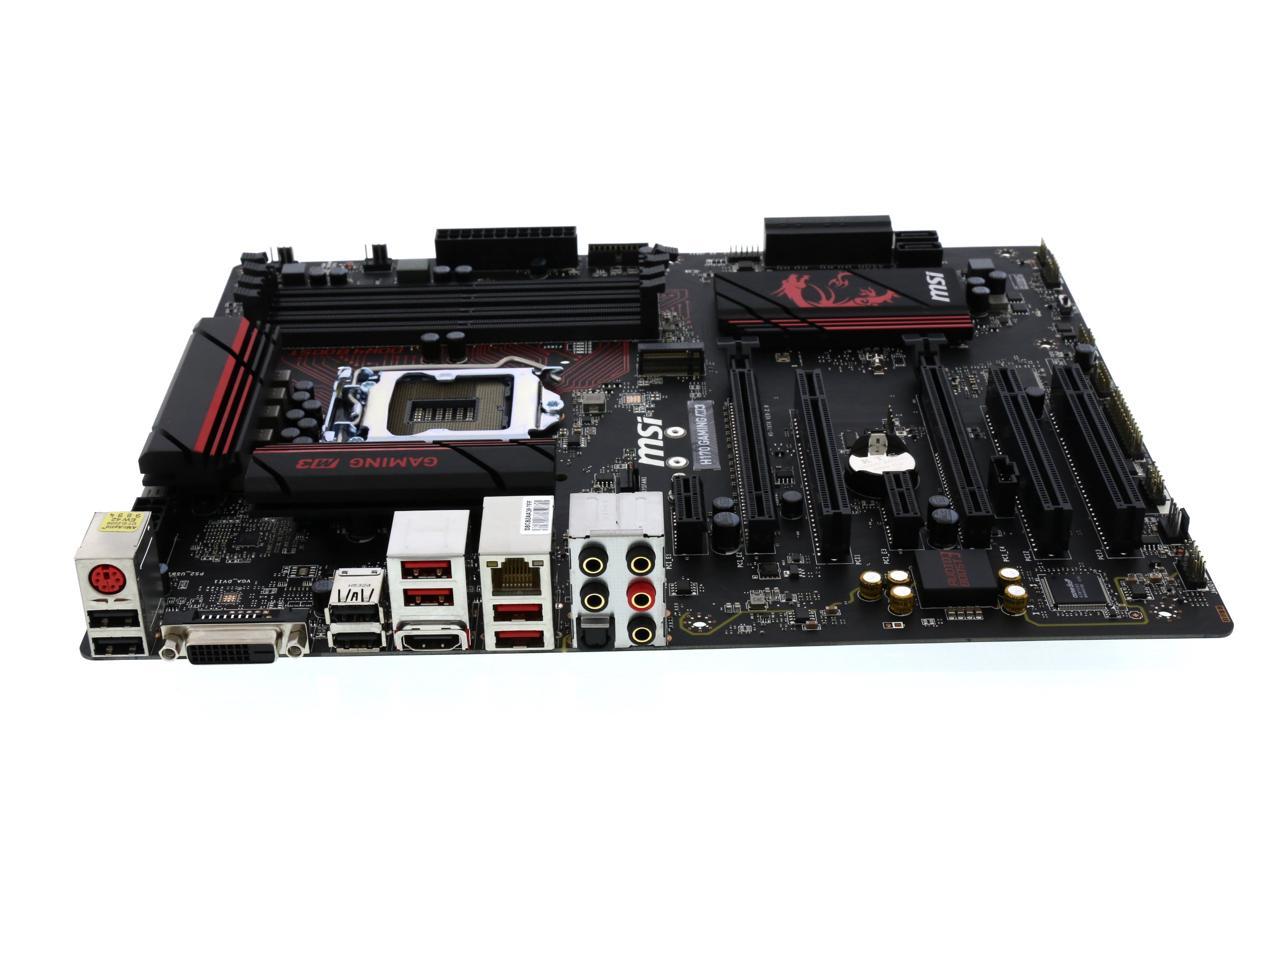 MSI MSI Gaming H170 Gaming M3 LGA 1151 ATX Intel Motherboard - Newegg.com